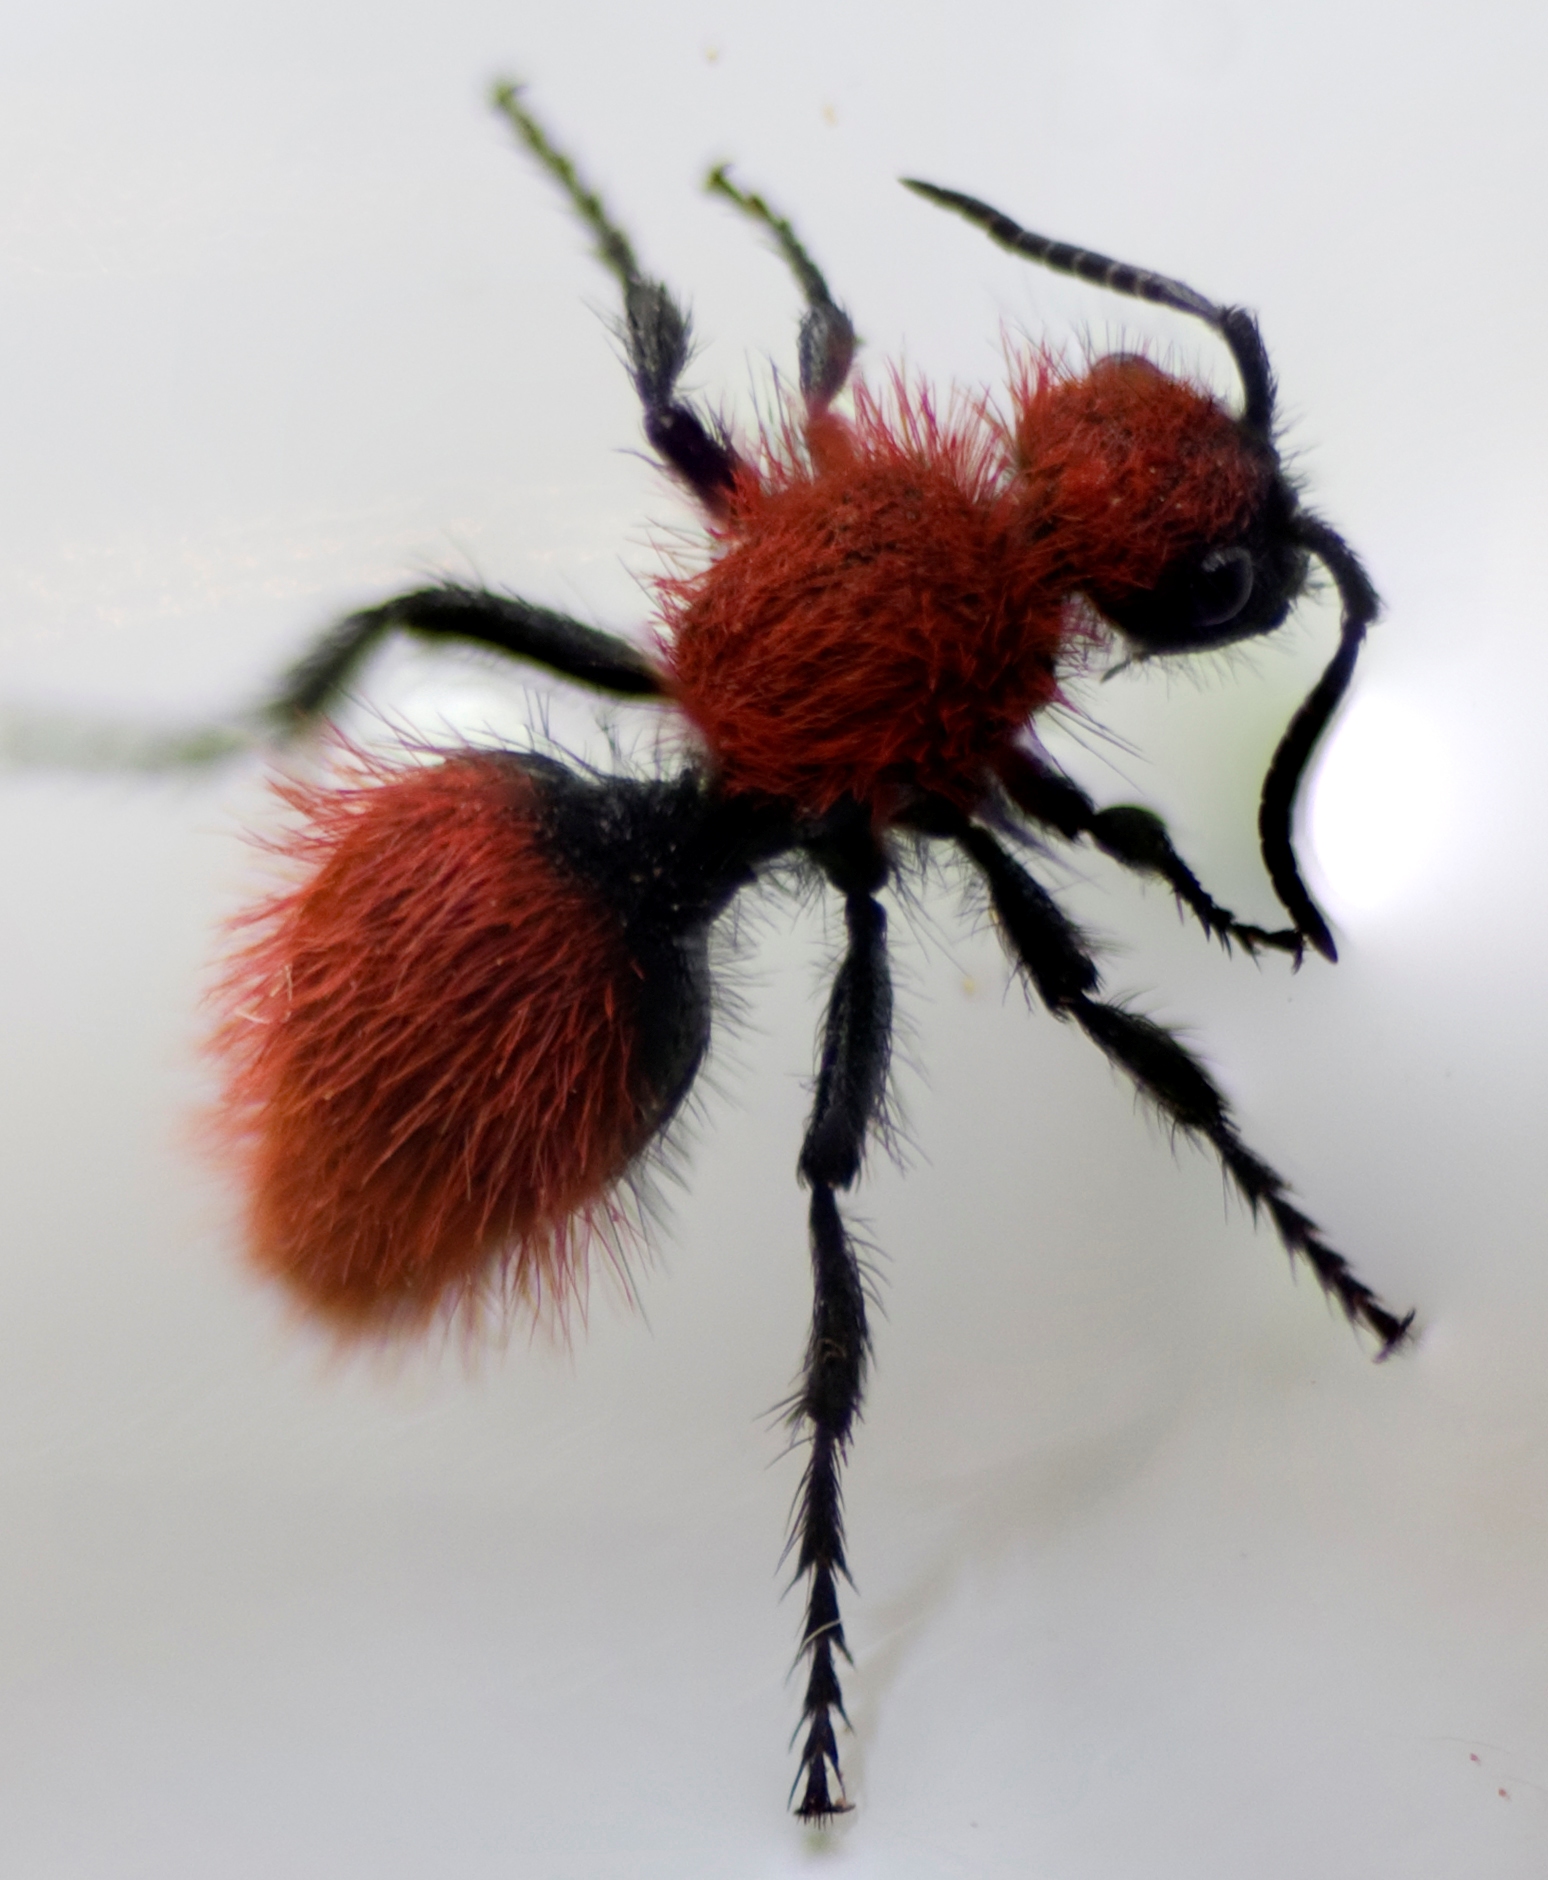 File:Velvet Ant.jpg - Wikimedia Commons